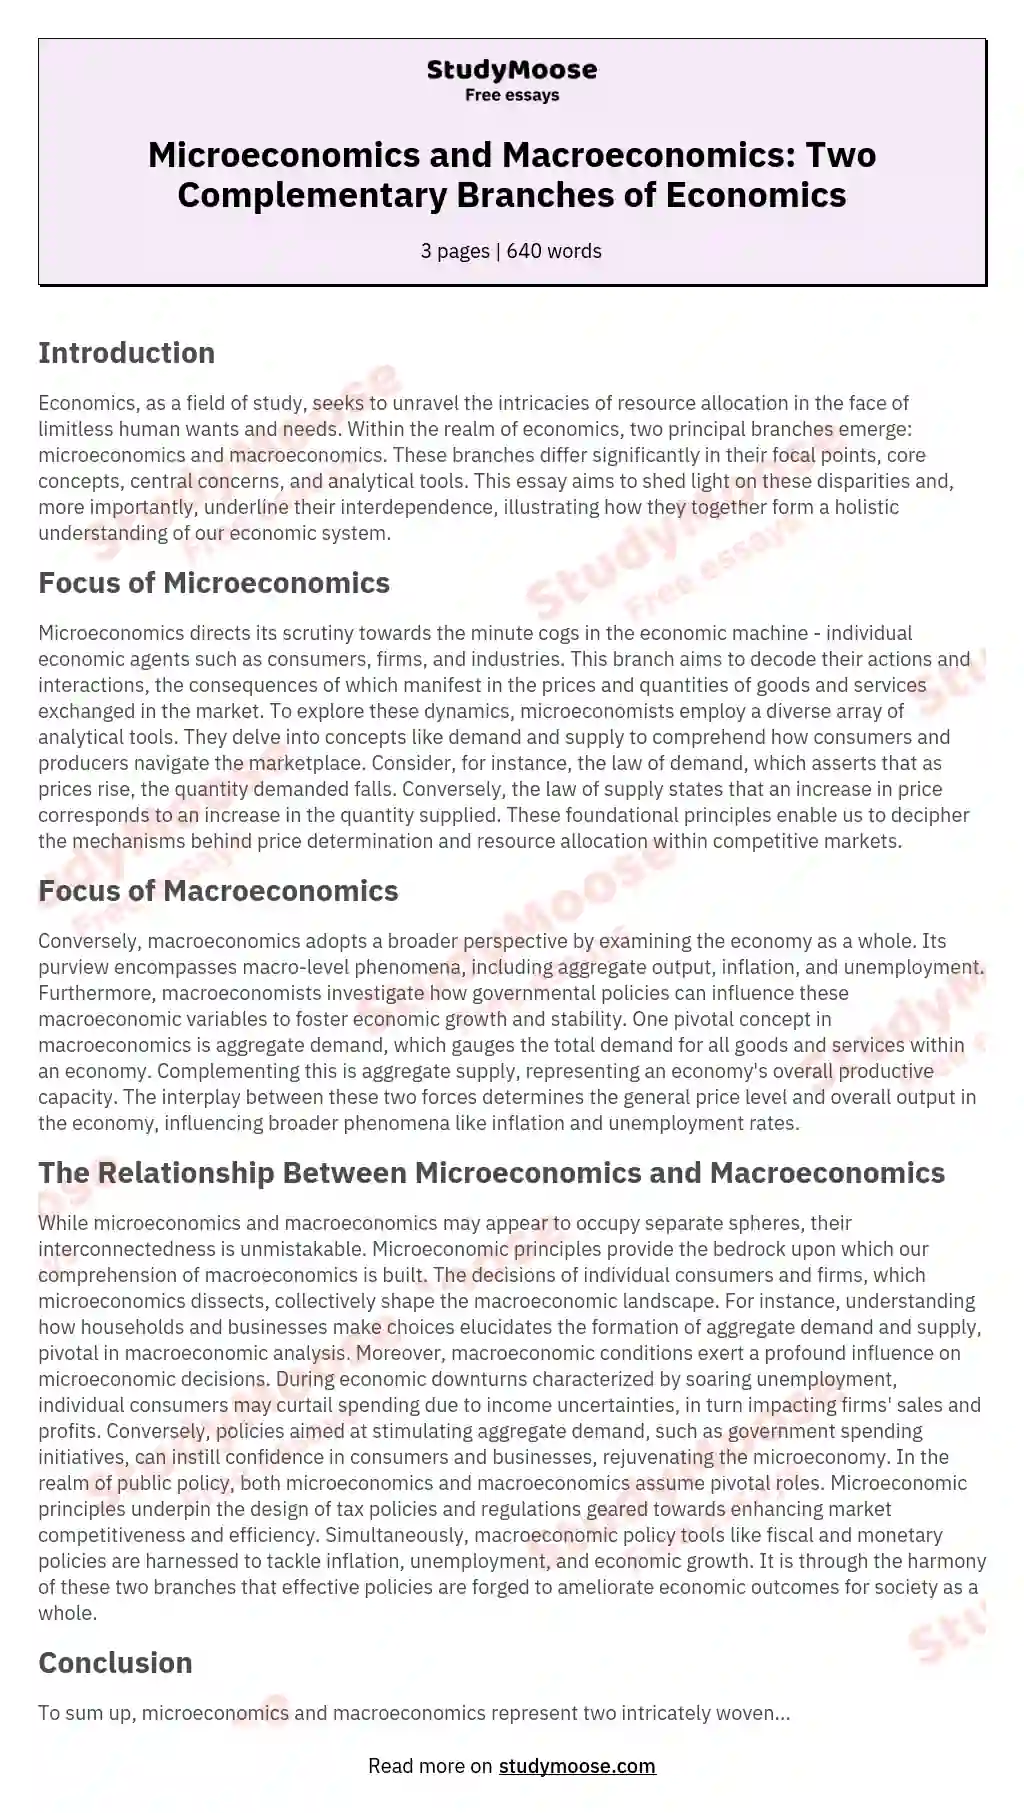 Distinction between Microeconomics and Macroeconomics